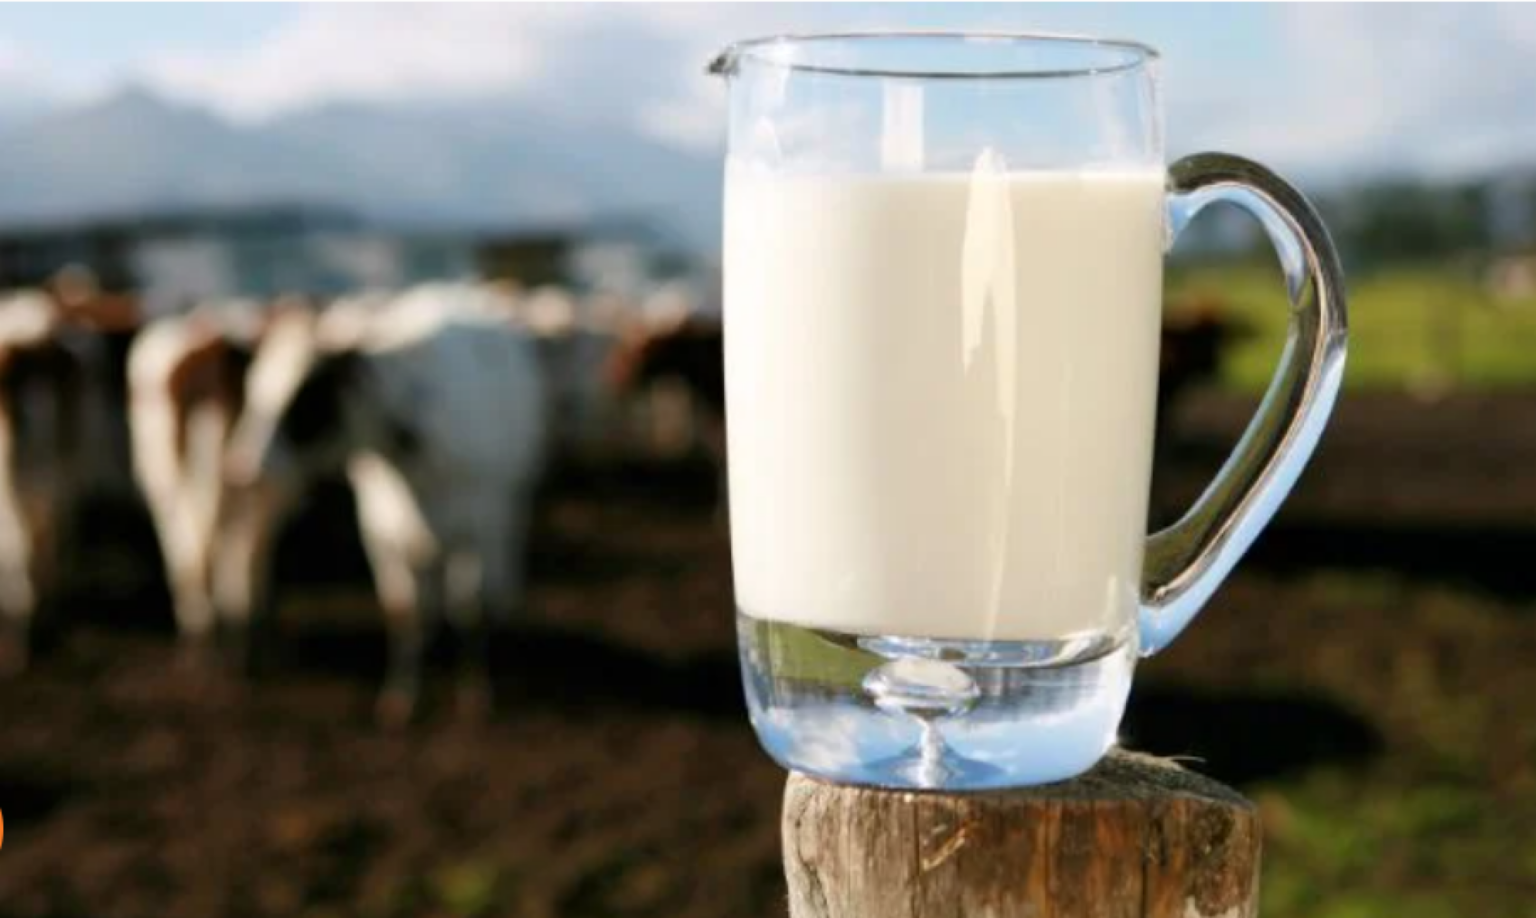 lapte, sursa foto ifa.ie